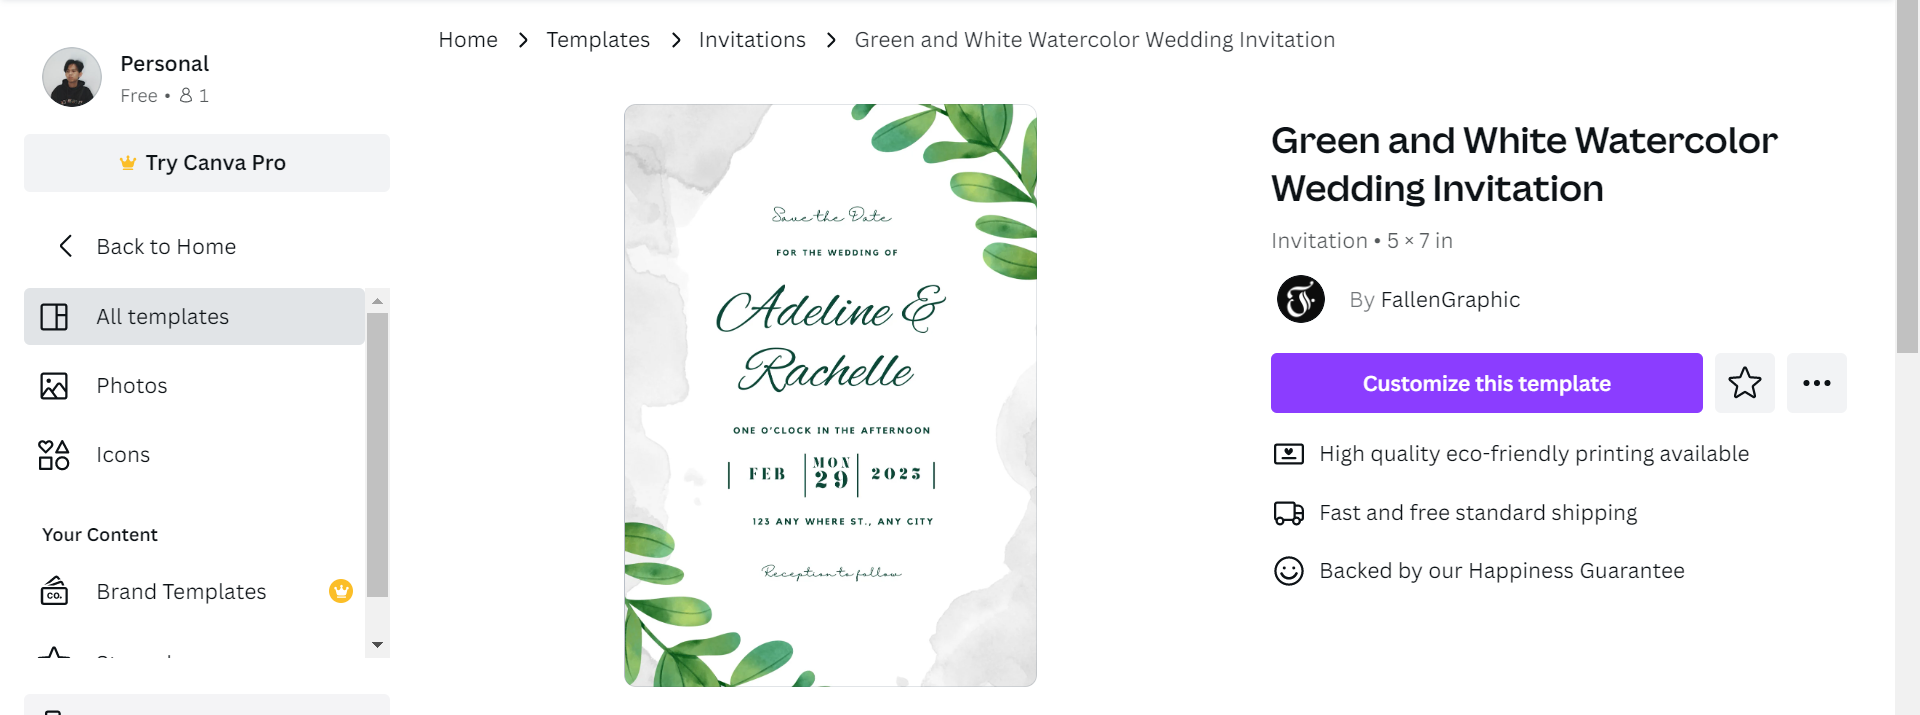 Cara Membuat Undangan Pernikahan Dengan Canva - Template Undangan green